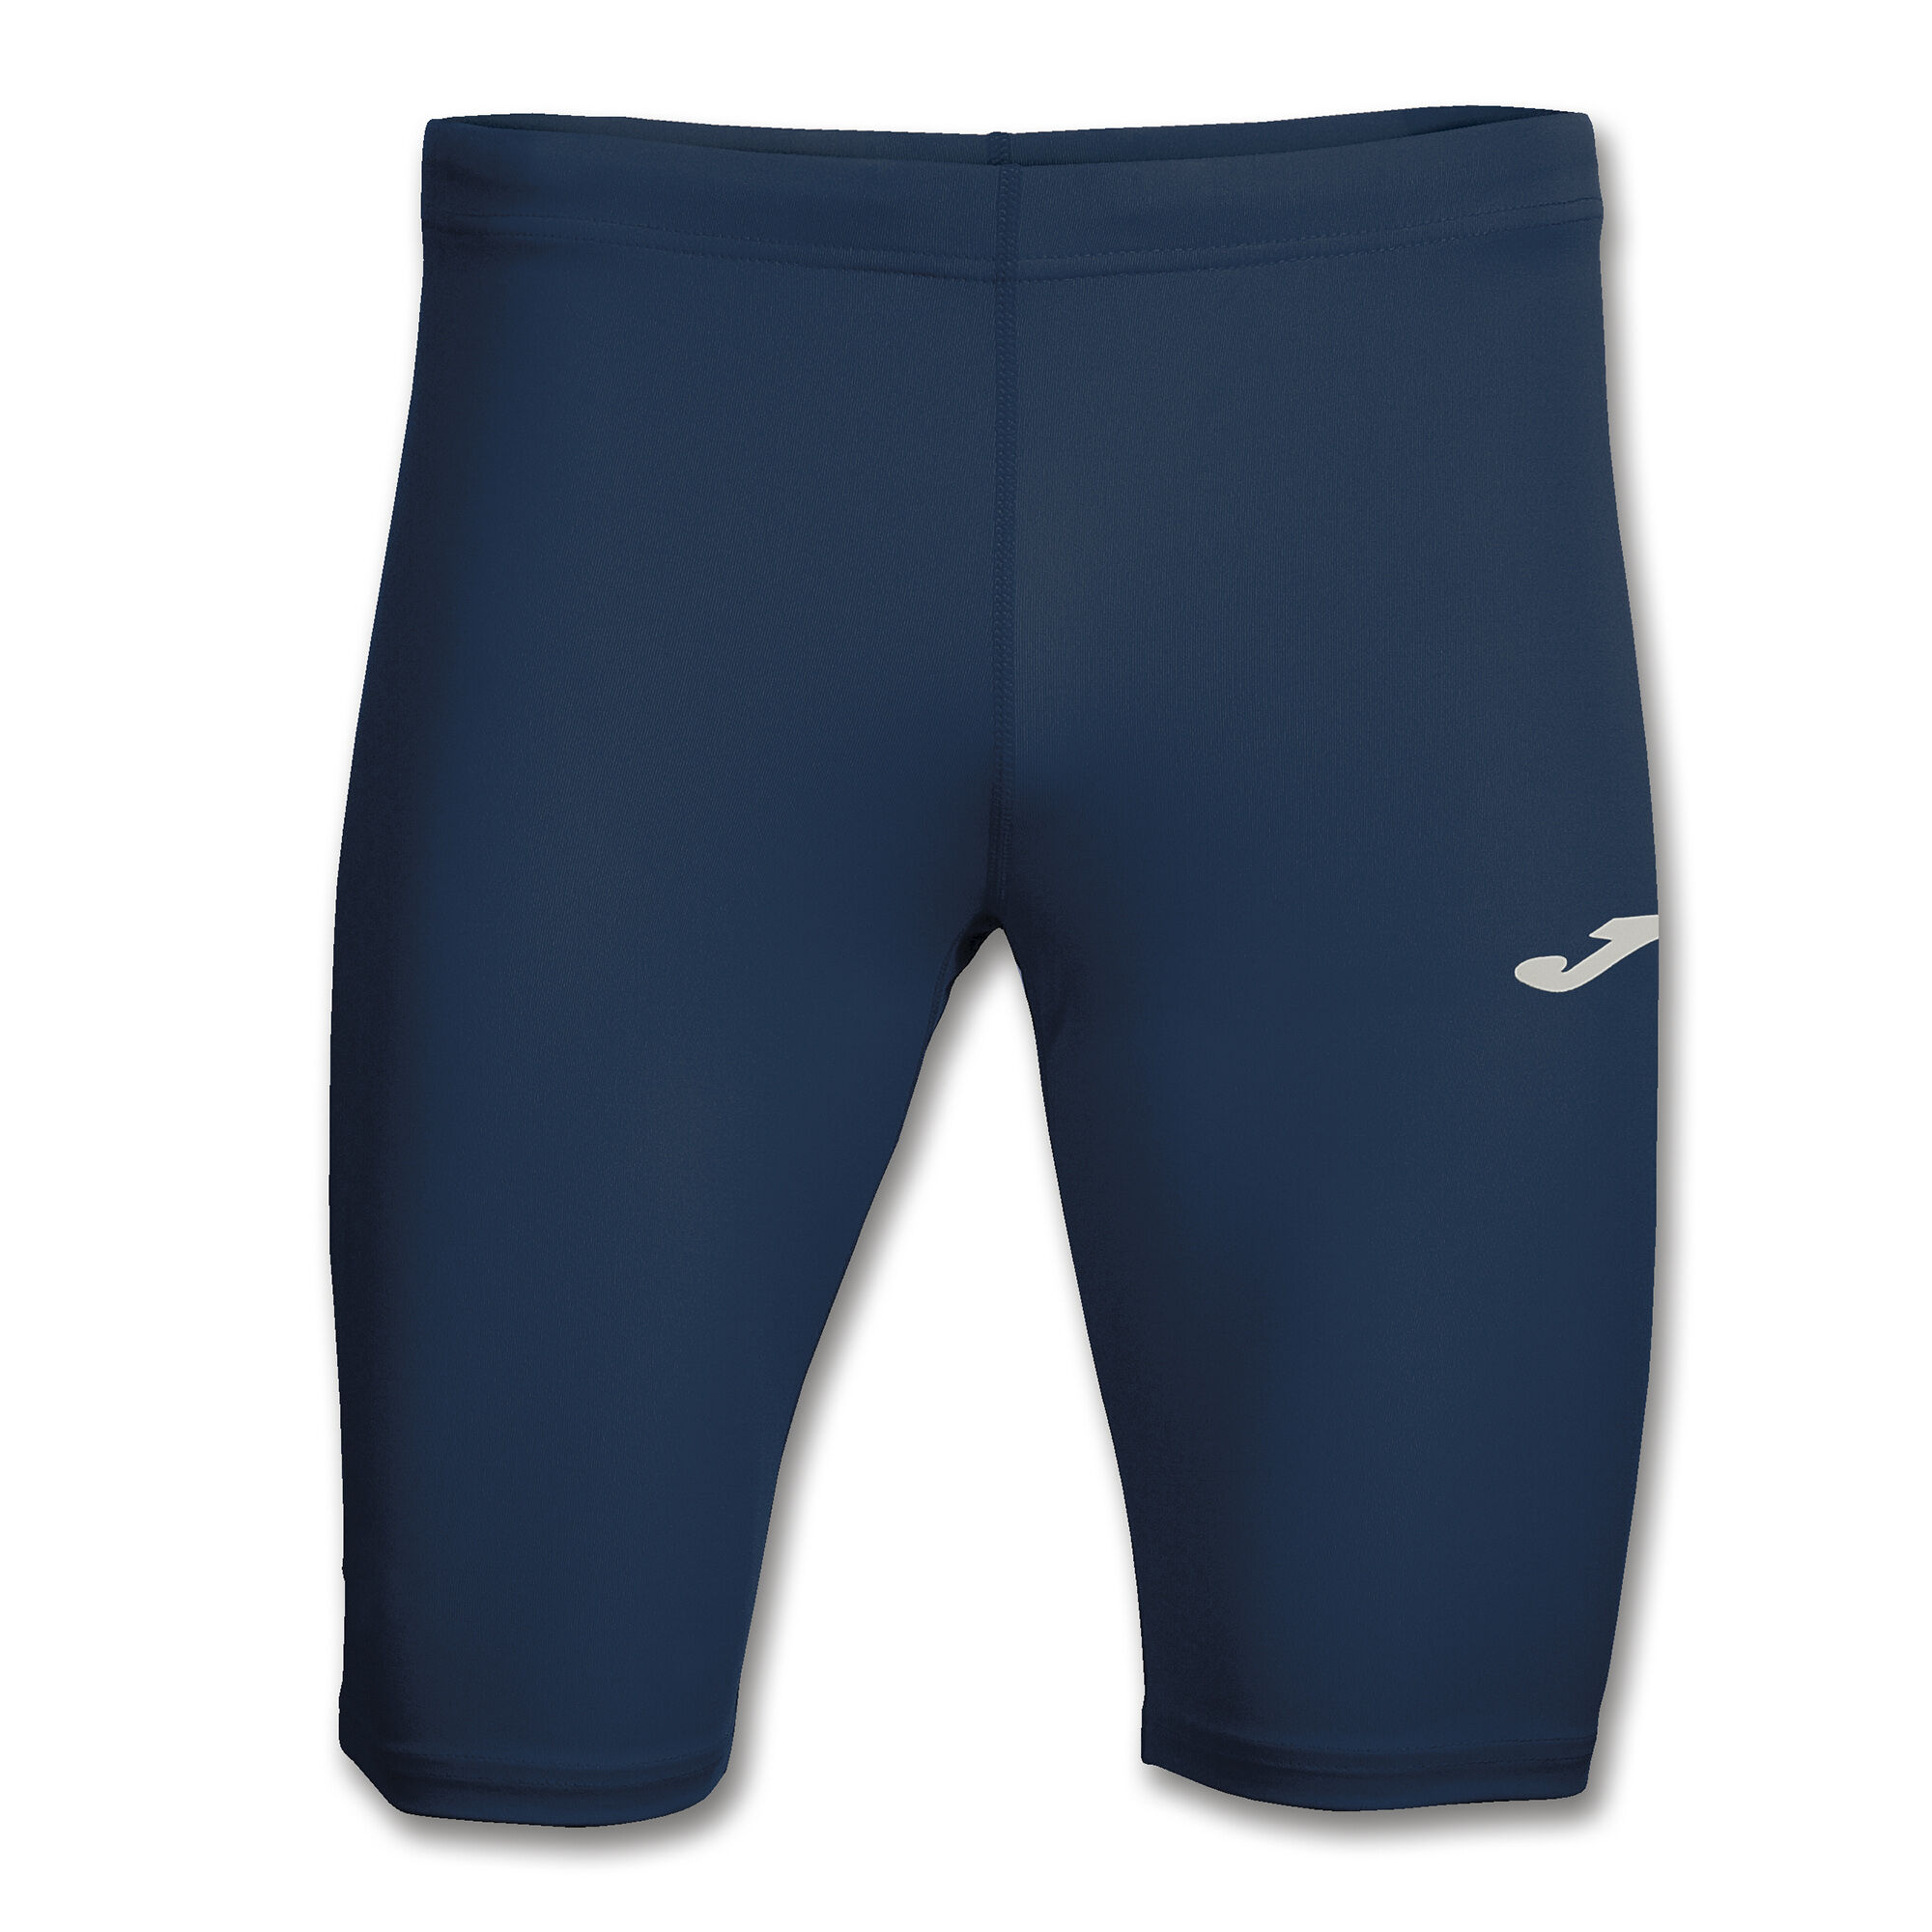 Short tights man Record navy blue | JOMA®